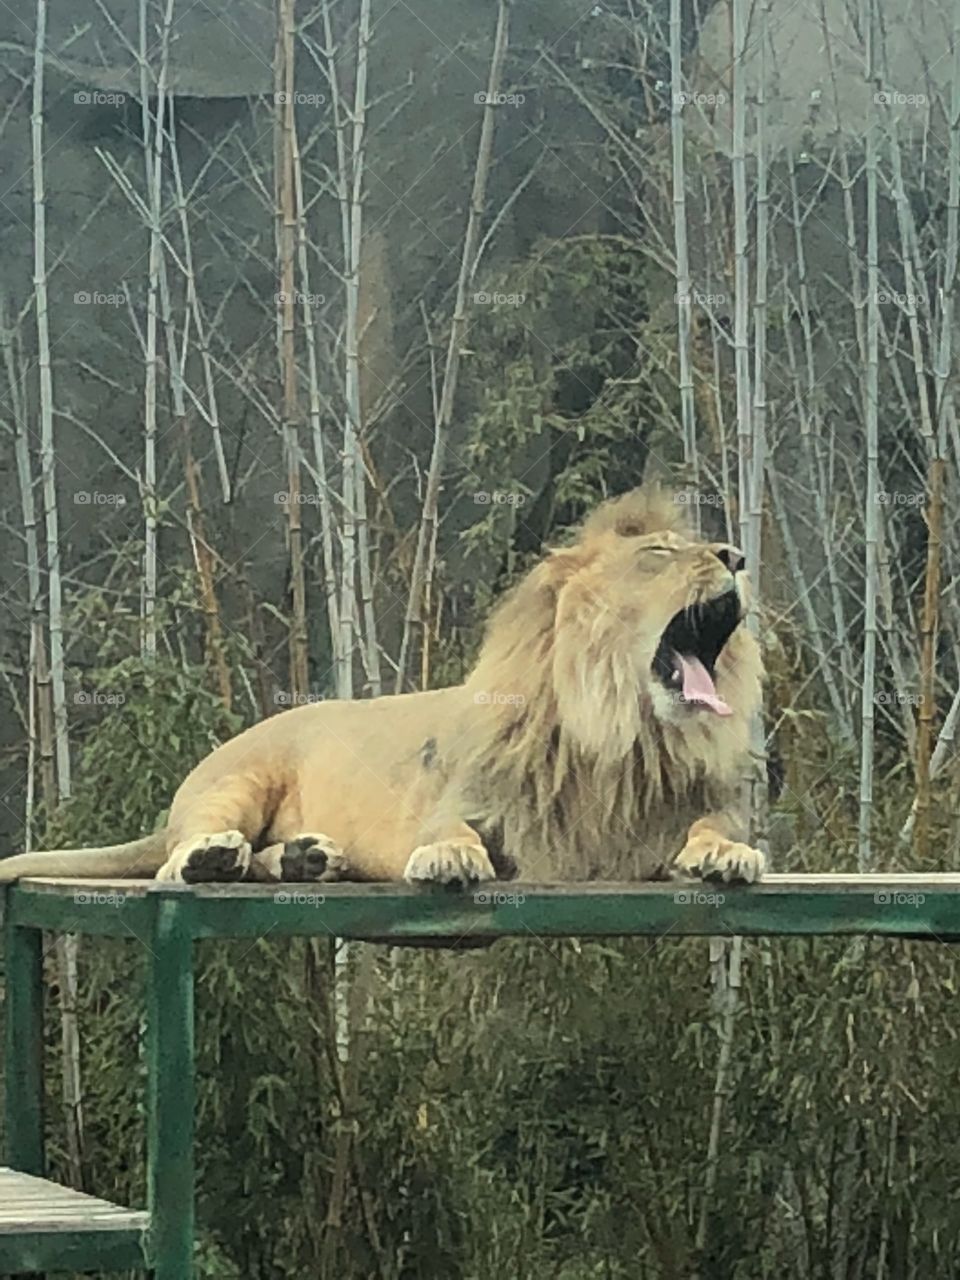 Lion yawning 